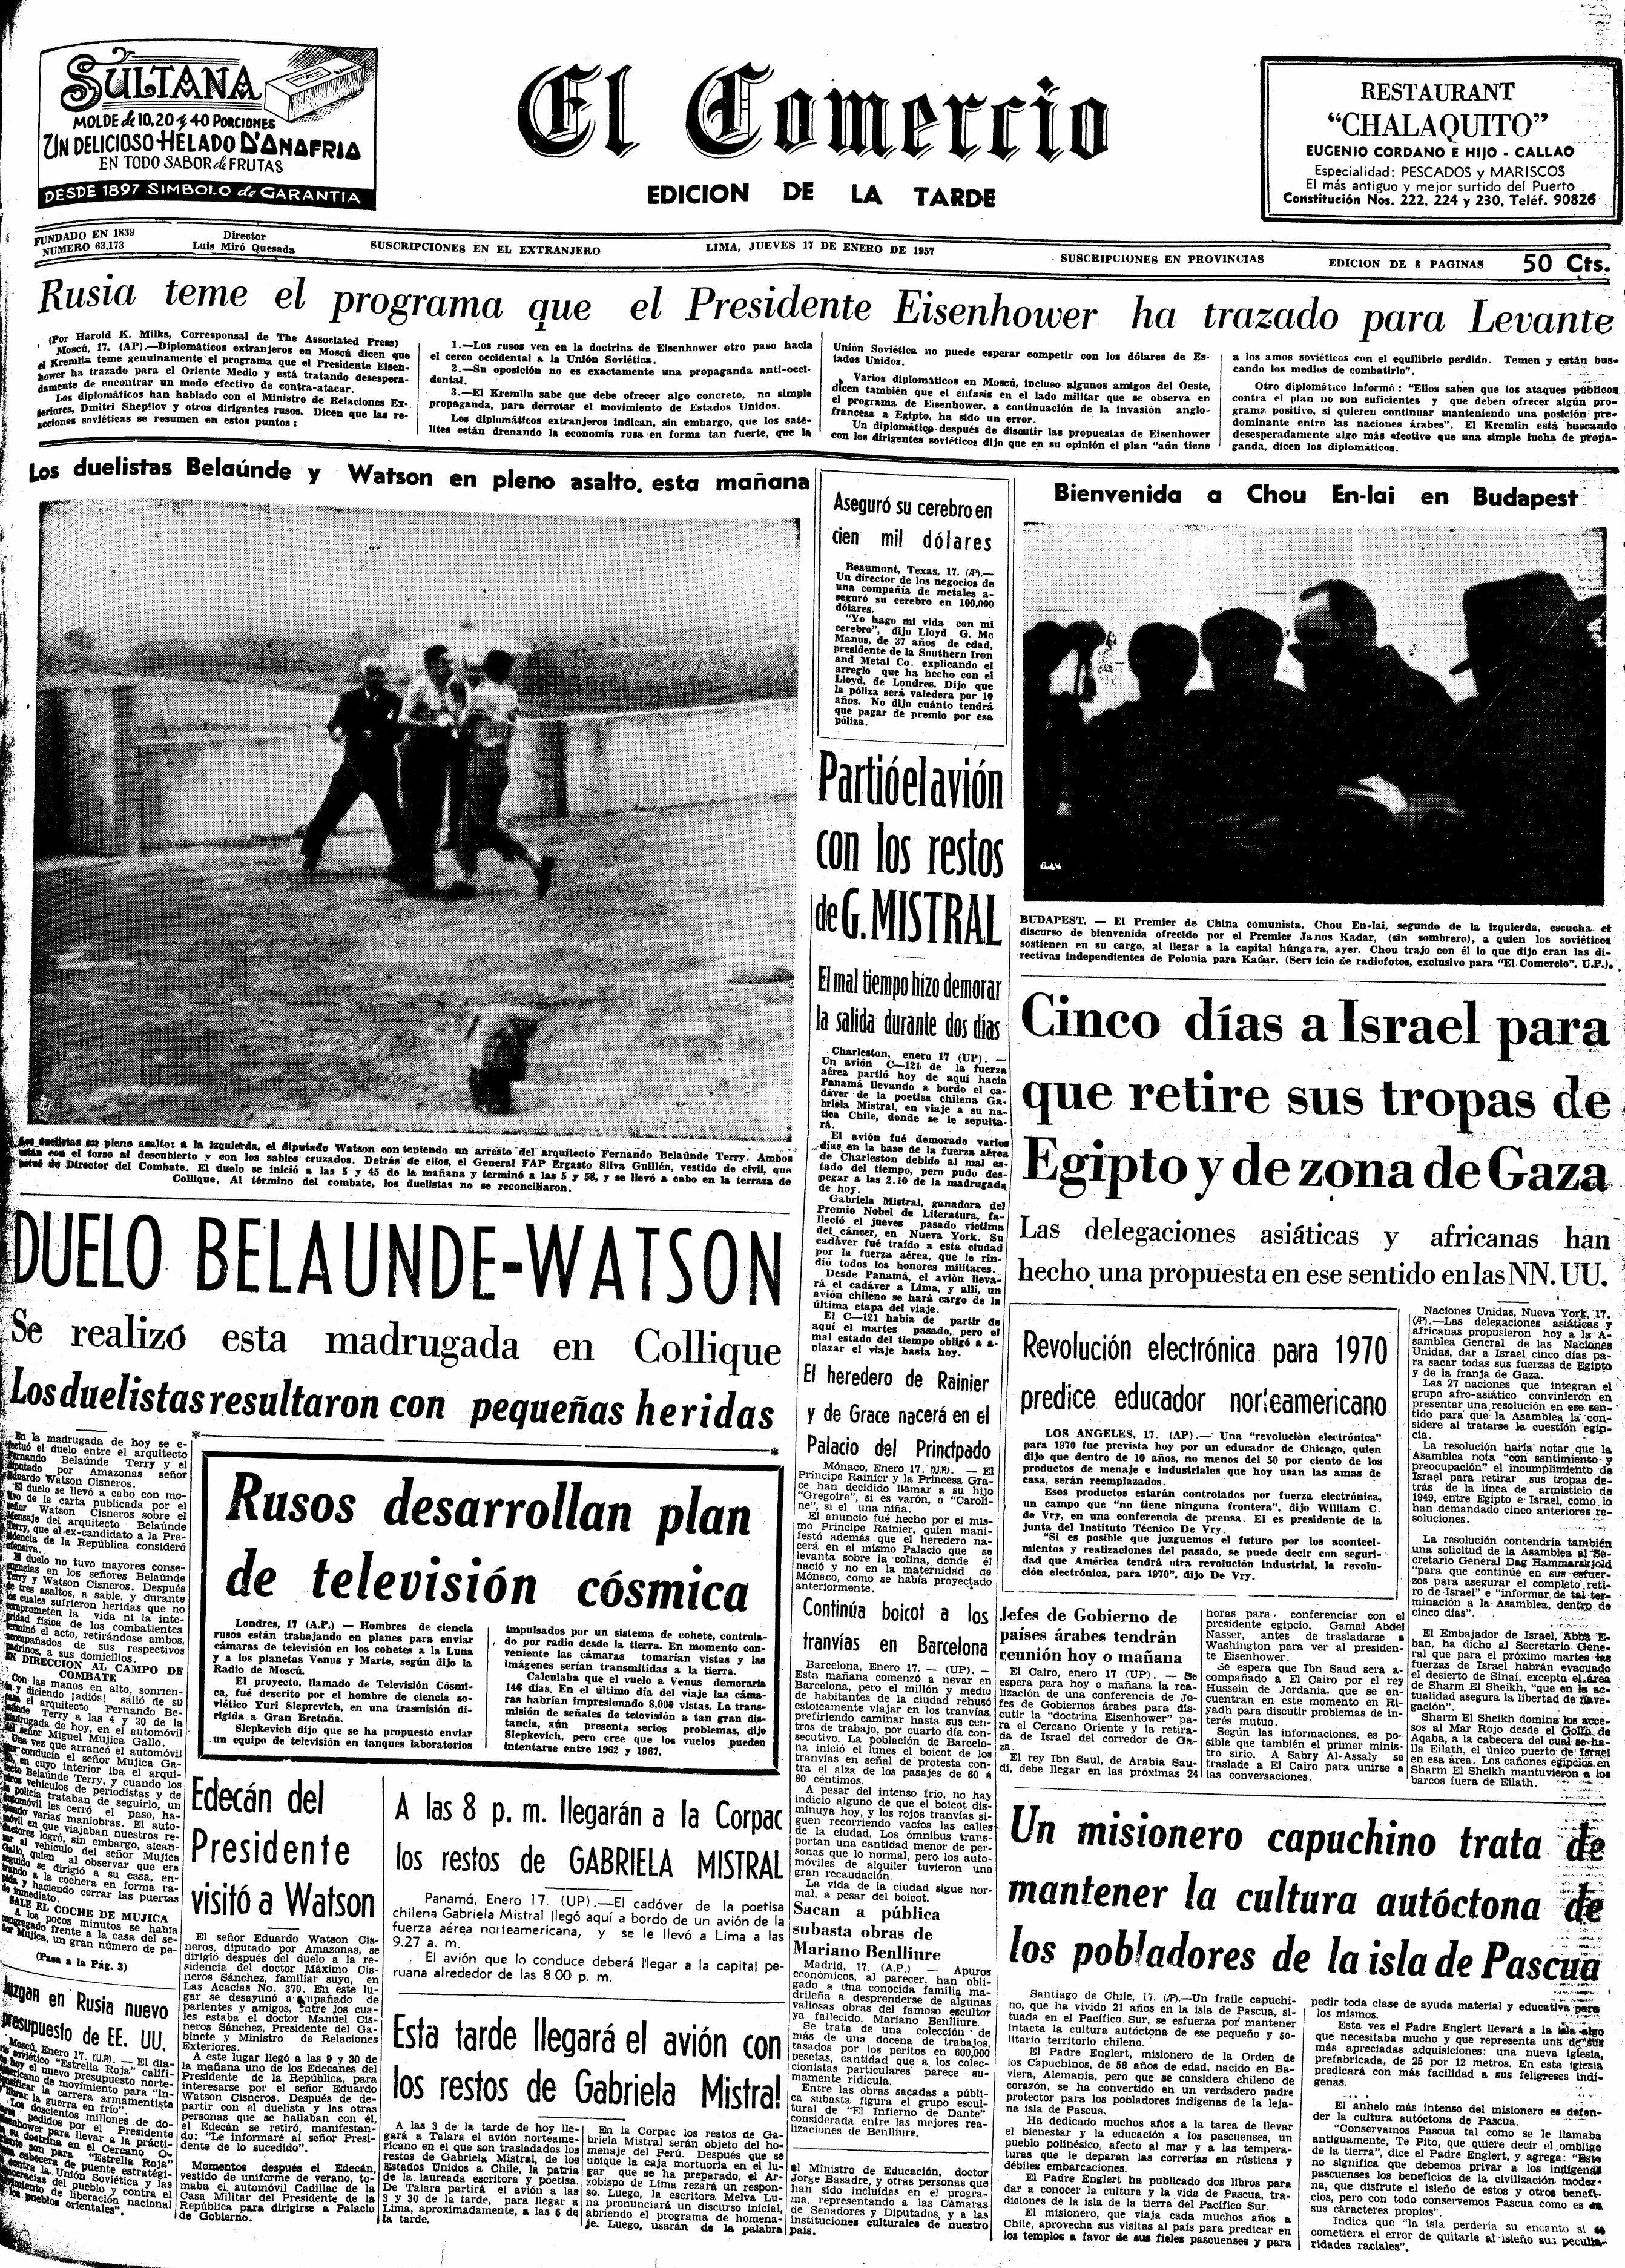 "Duelo Belaunde-Watson", tituló El Comercio en portada la crónica periodística sobre el lance entre ambos. (Fuente: Archivo Histórico El Comercio)